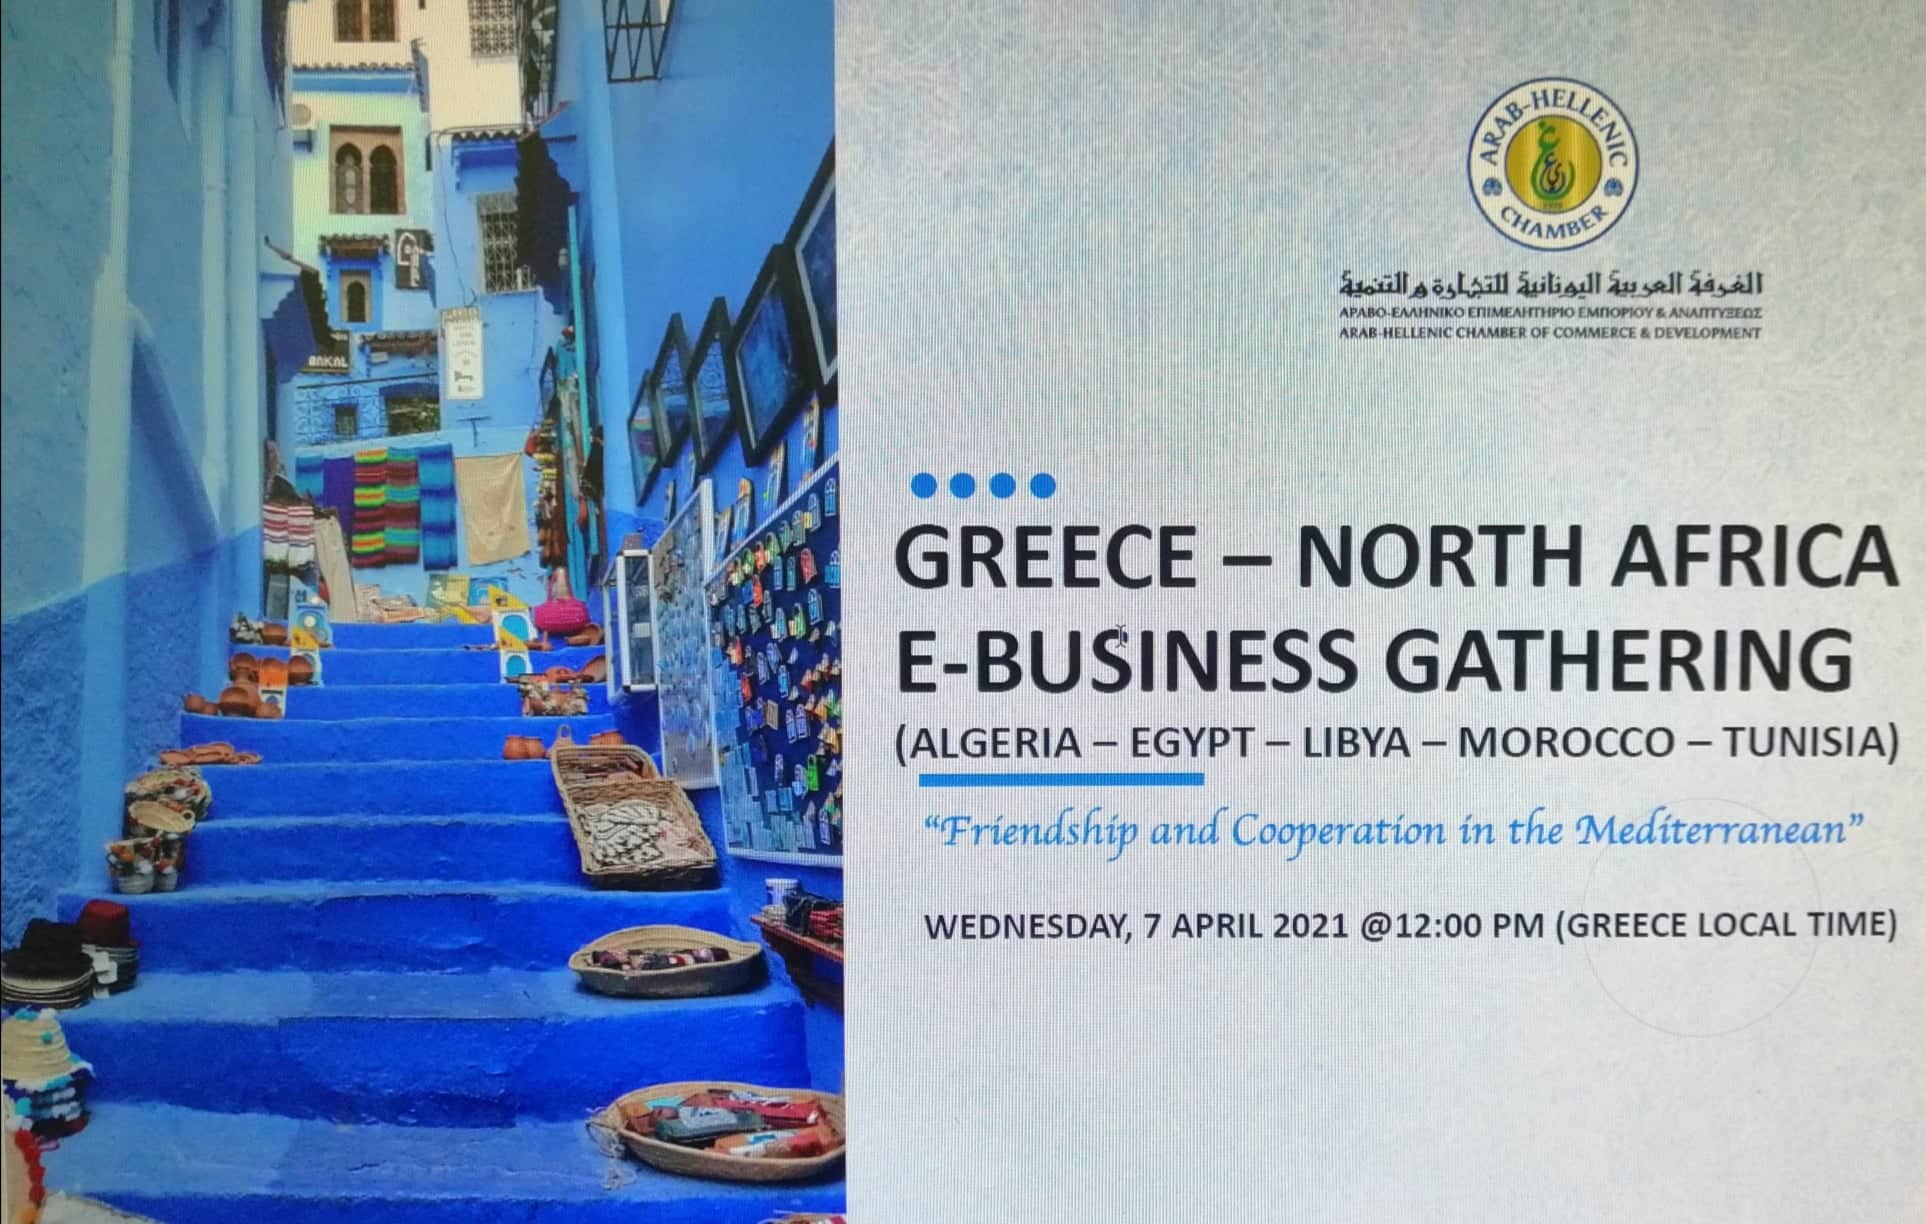 Επιμελητήριο Εύβοιας: Το Αραβο-Ελληνικό Επιμελητήριο διοργανώνει διαδικτυακή επιχειρηματική συνάντηση